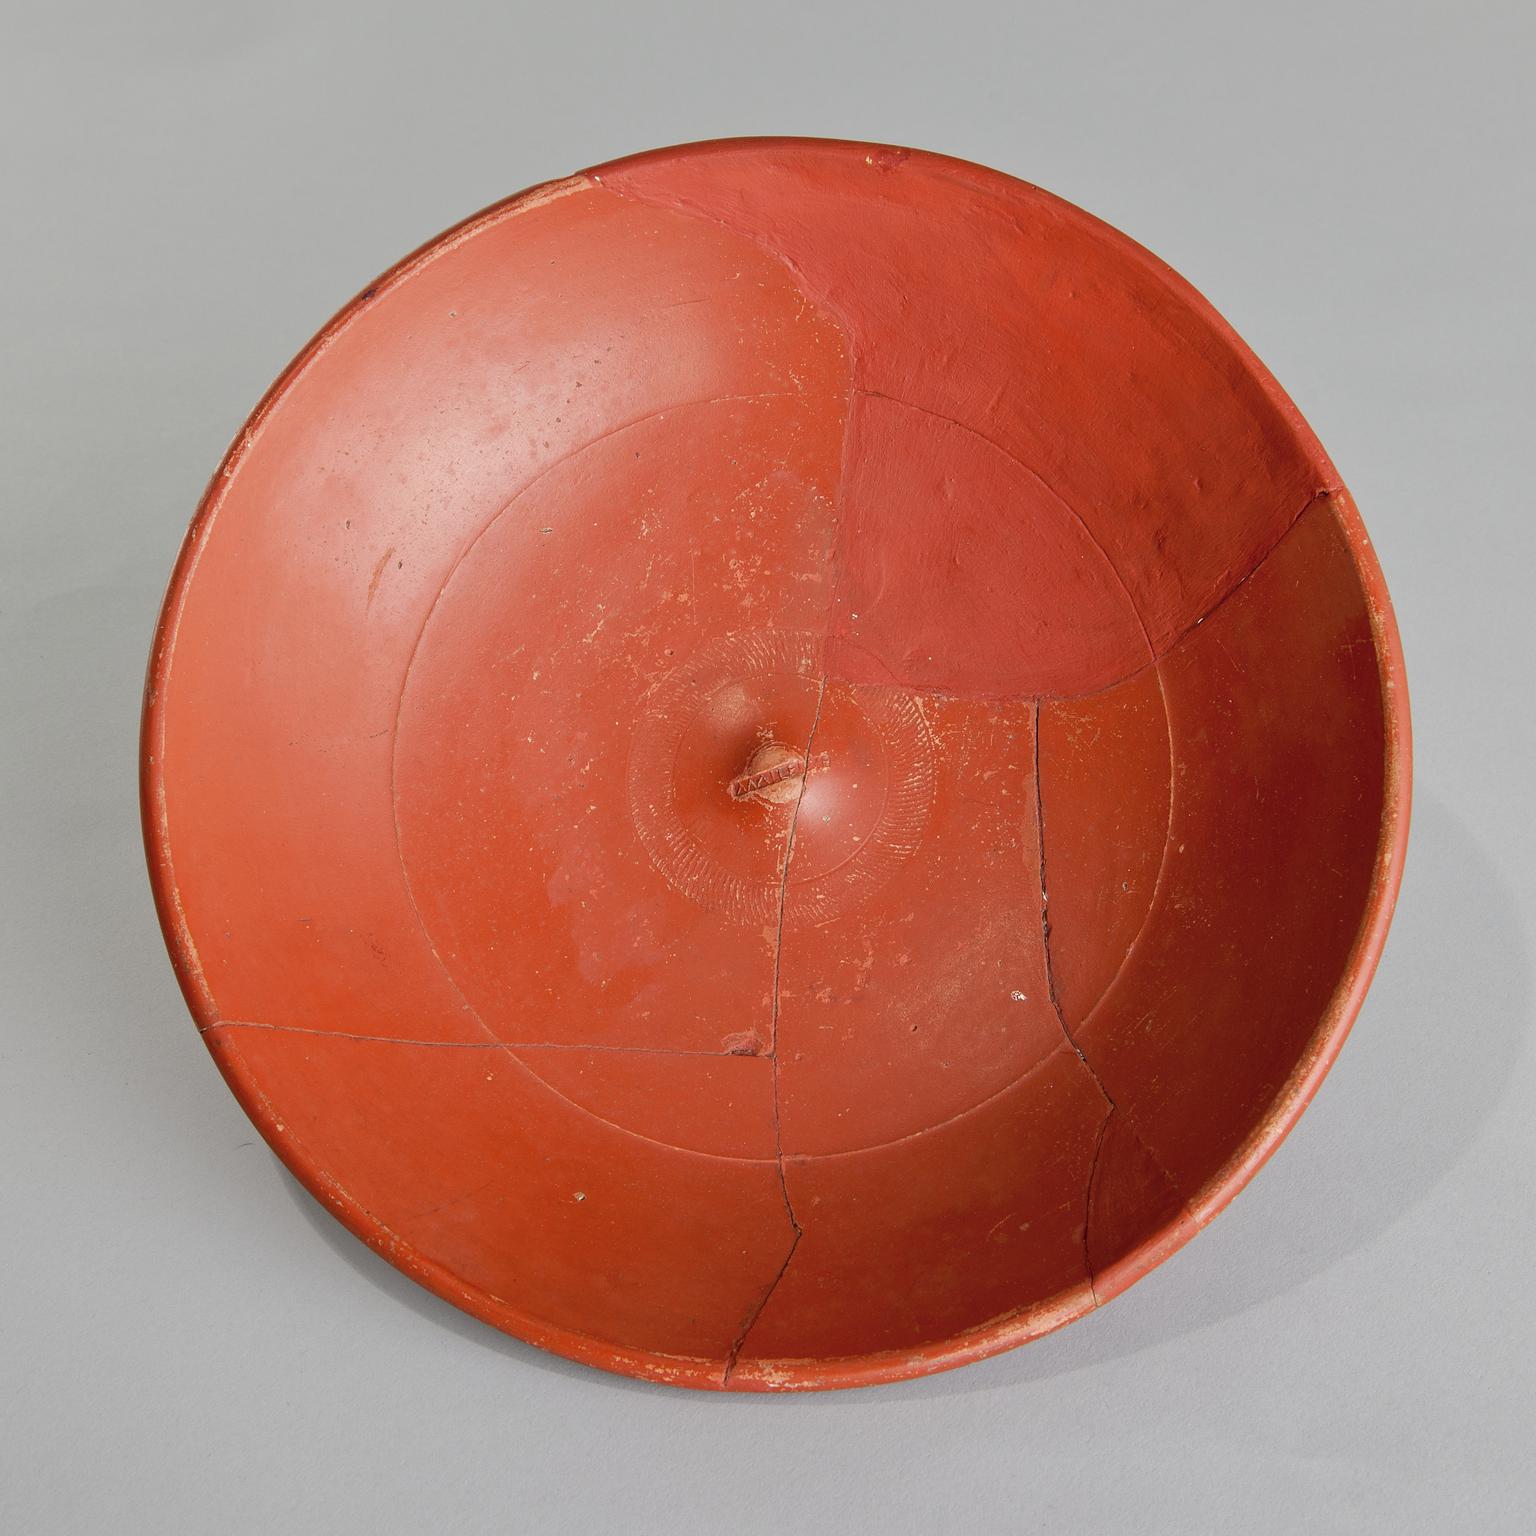 Roman samian bowl, stamped